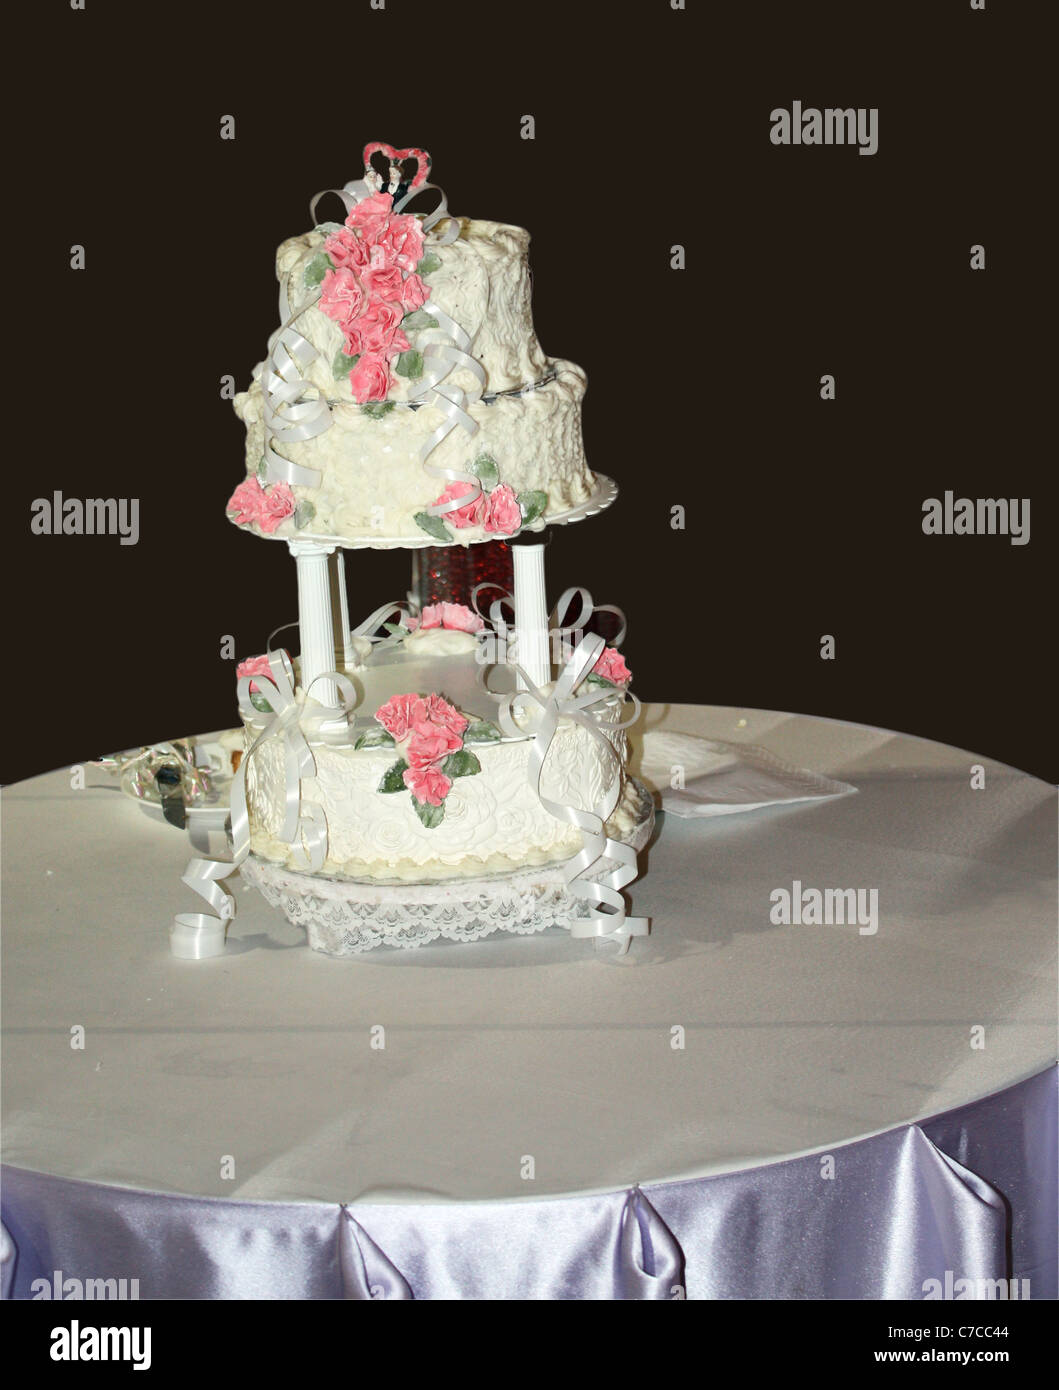 Un gâteau de mariage crémeux blanc placé sur une table de cu dans fond noir Banque D'Images